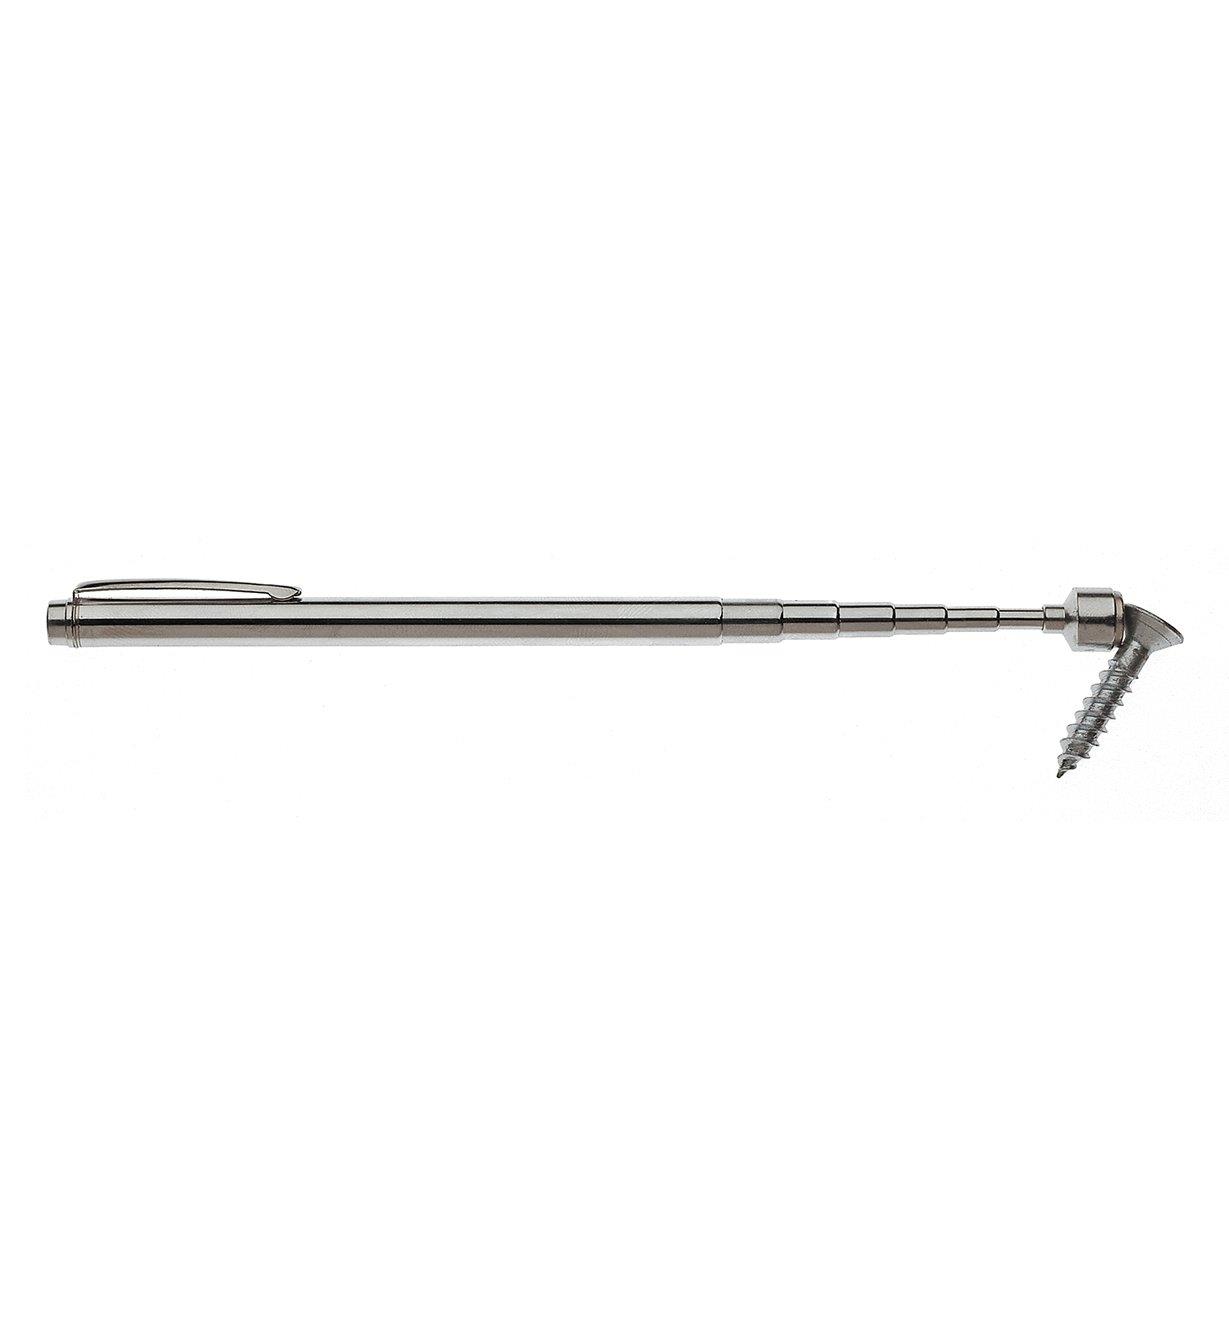 Pocket Magnet/Pin Retriever holding a screw